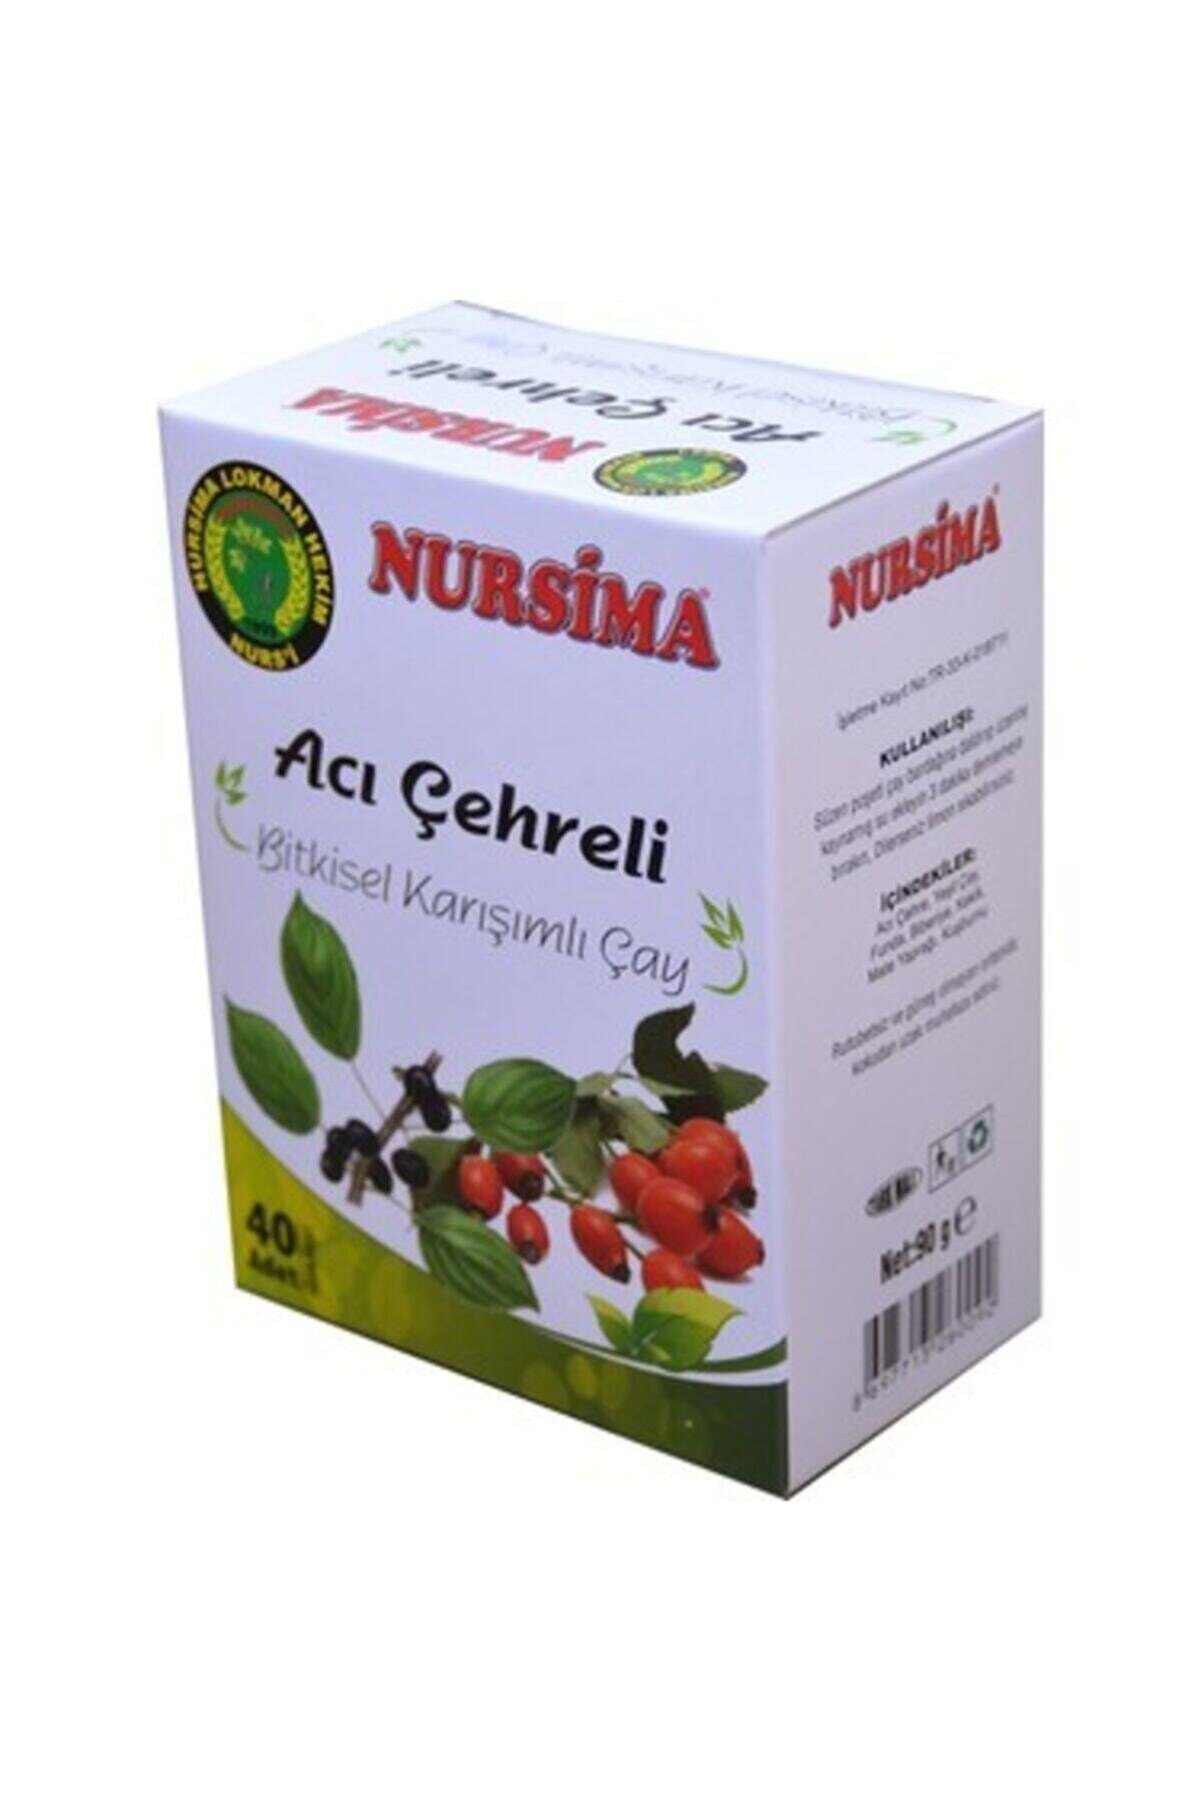 Nursima Acı Çehreli Bitkisel Karışımlı Çay ( Bağırsak Düzenleyici )- 40 Adet